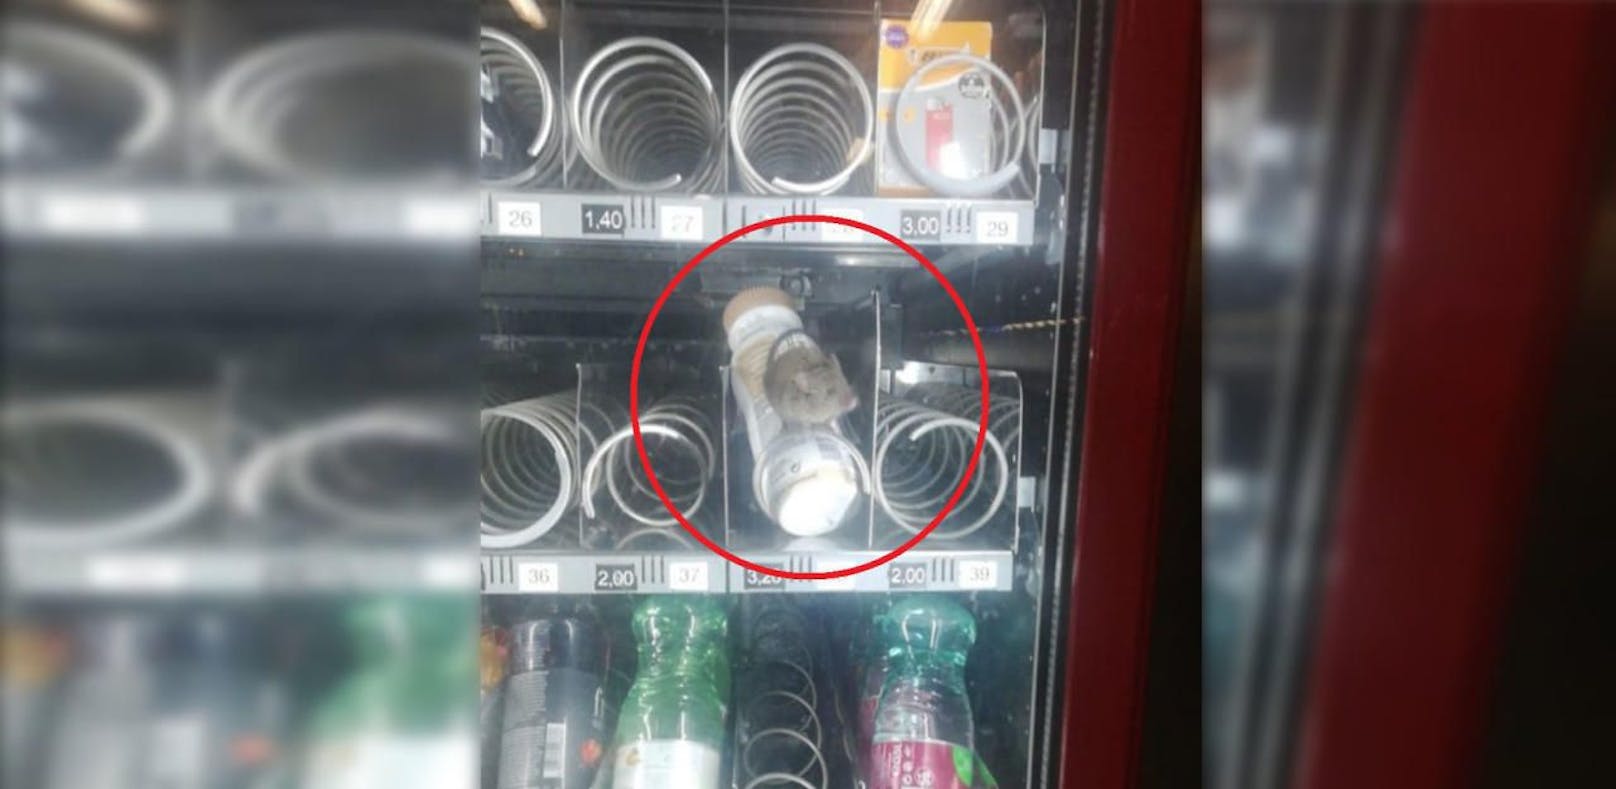 Maus in Getränkeautomat in Wien entdeckt